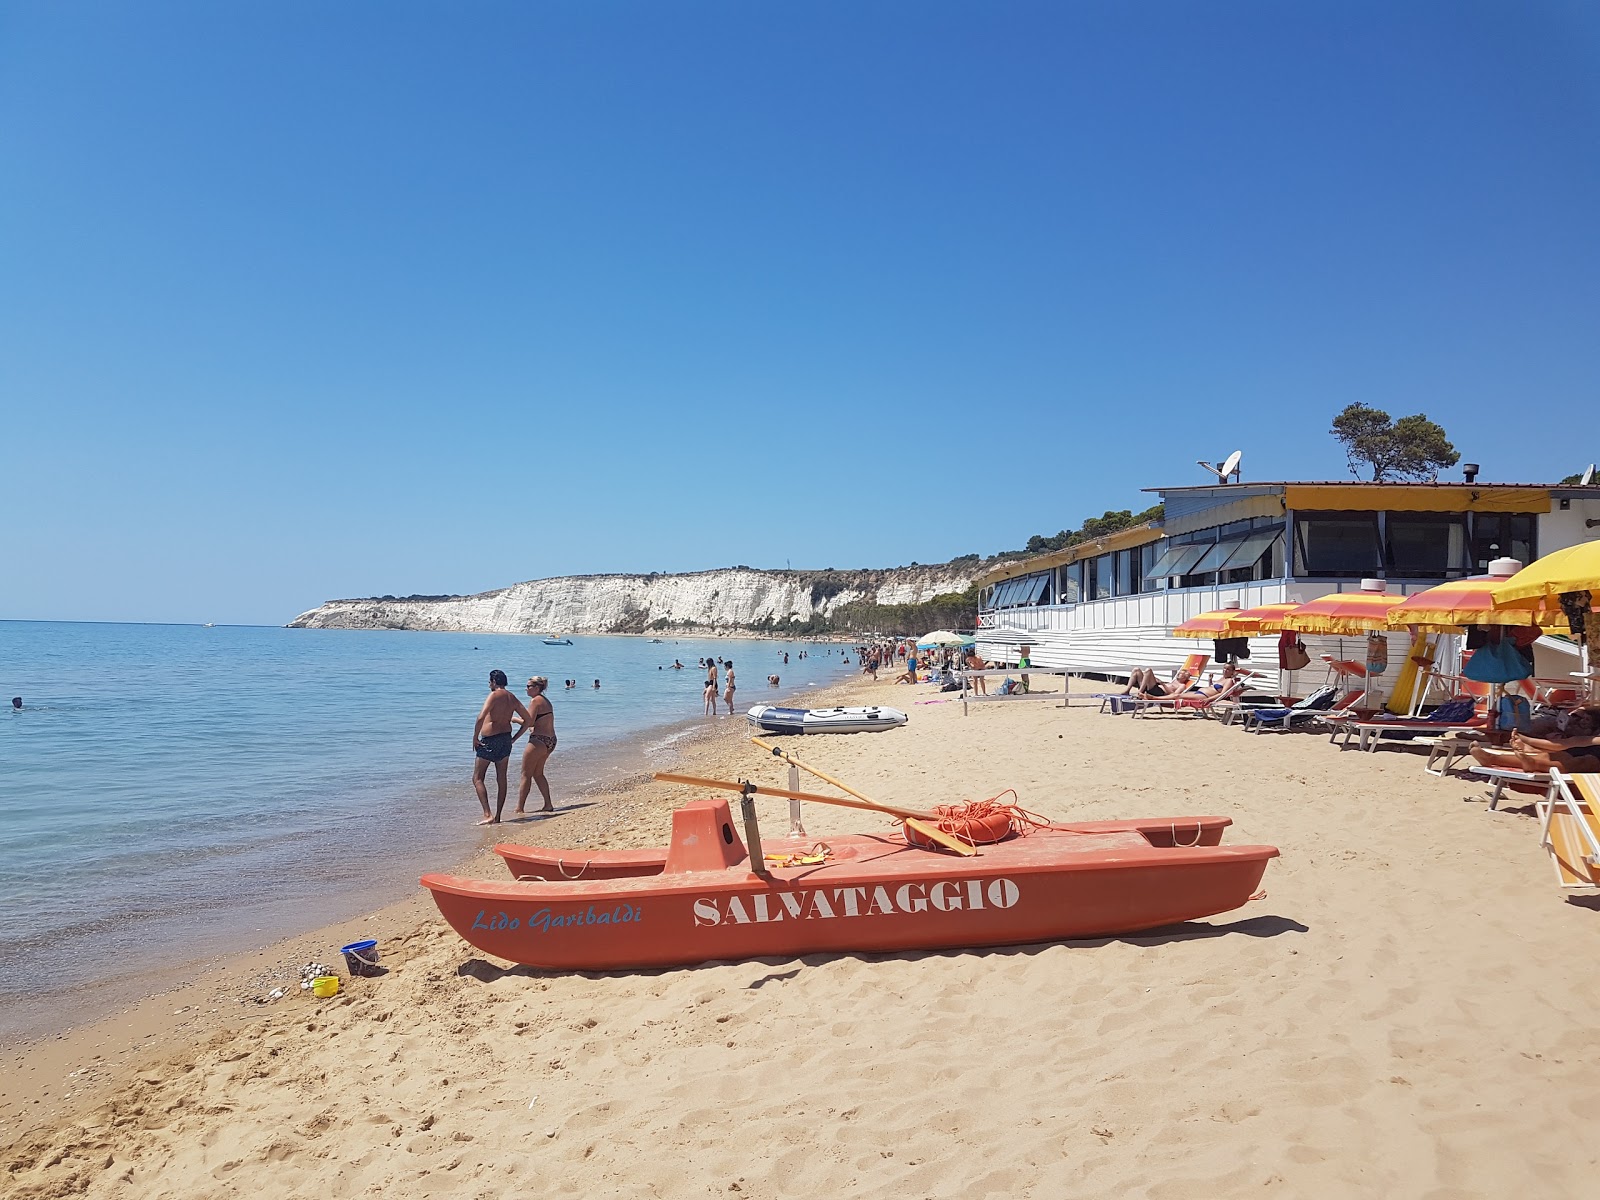 Zdjęcie Spiaggia Di Eraclea Minoa położony w naturalnym obszarze